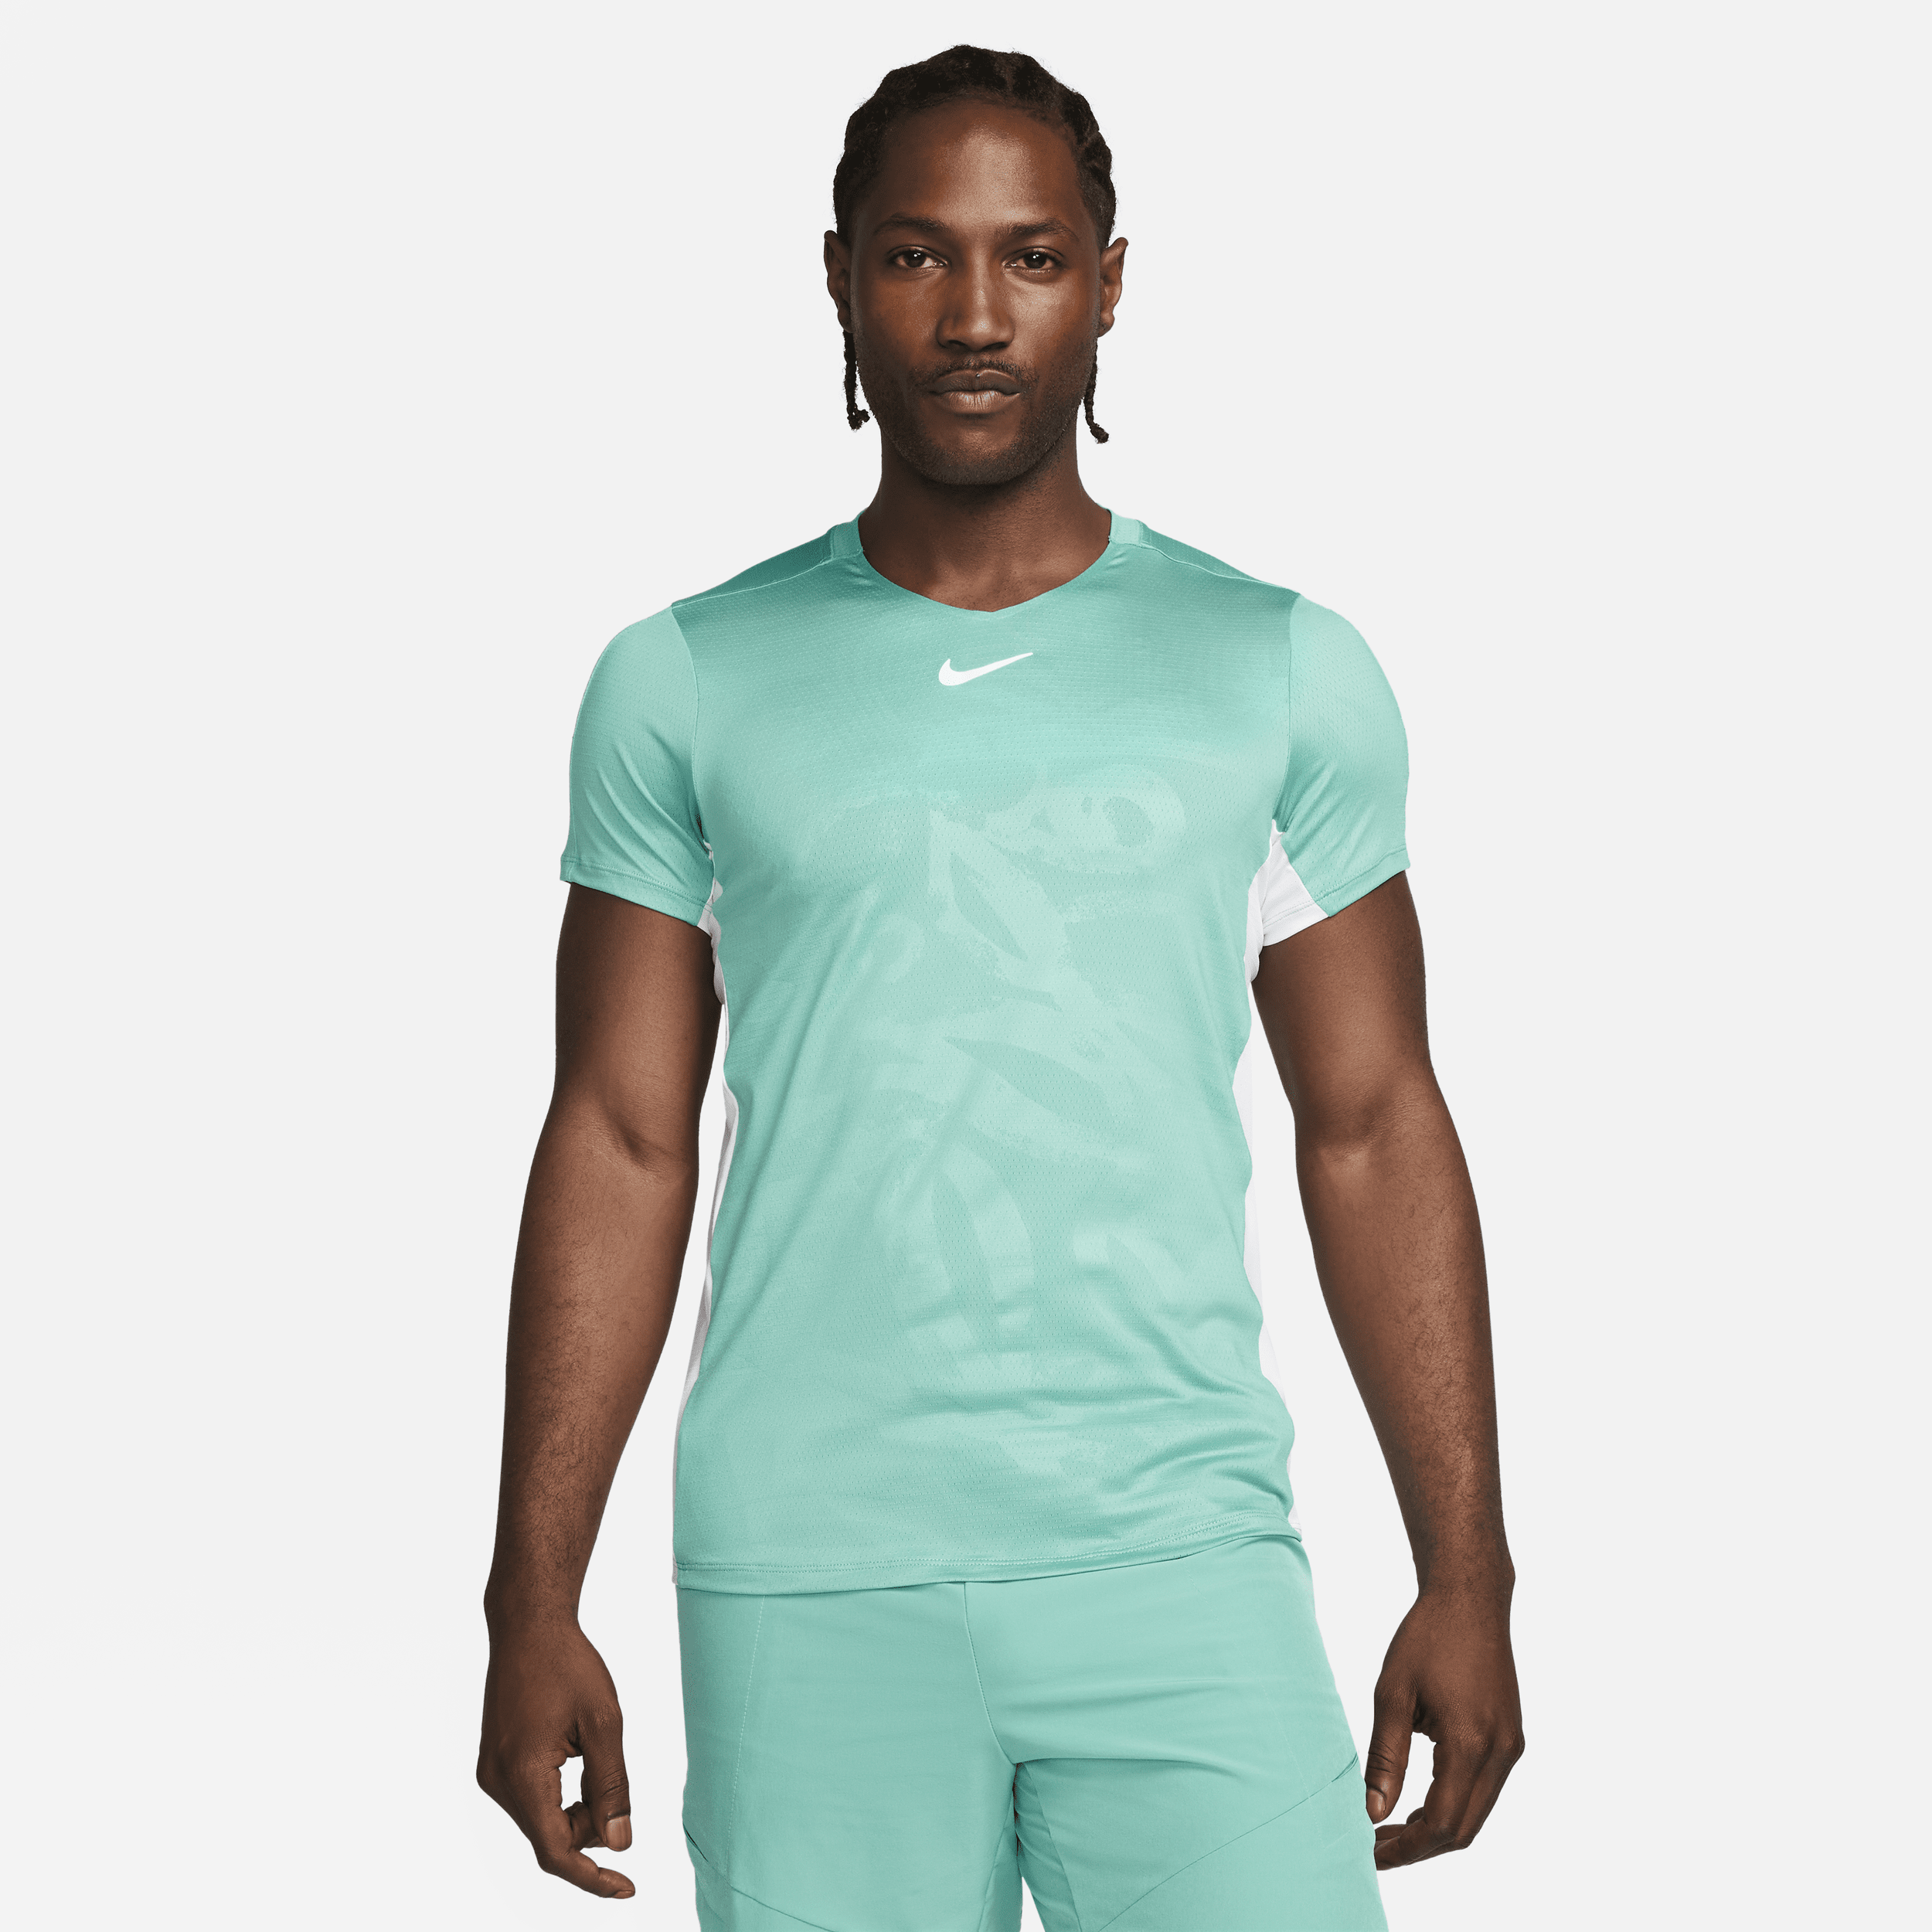 NikeCourt Dri-FIT Advantage-tennistrøje til mænd - grøn